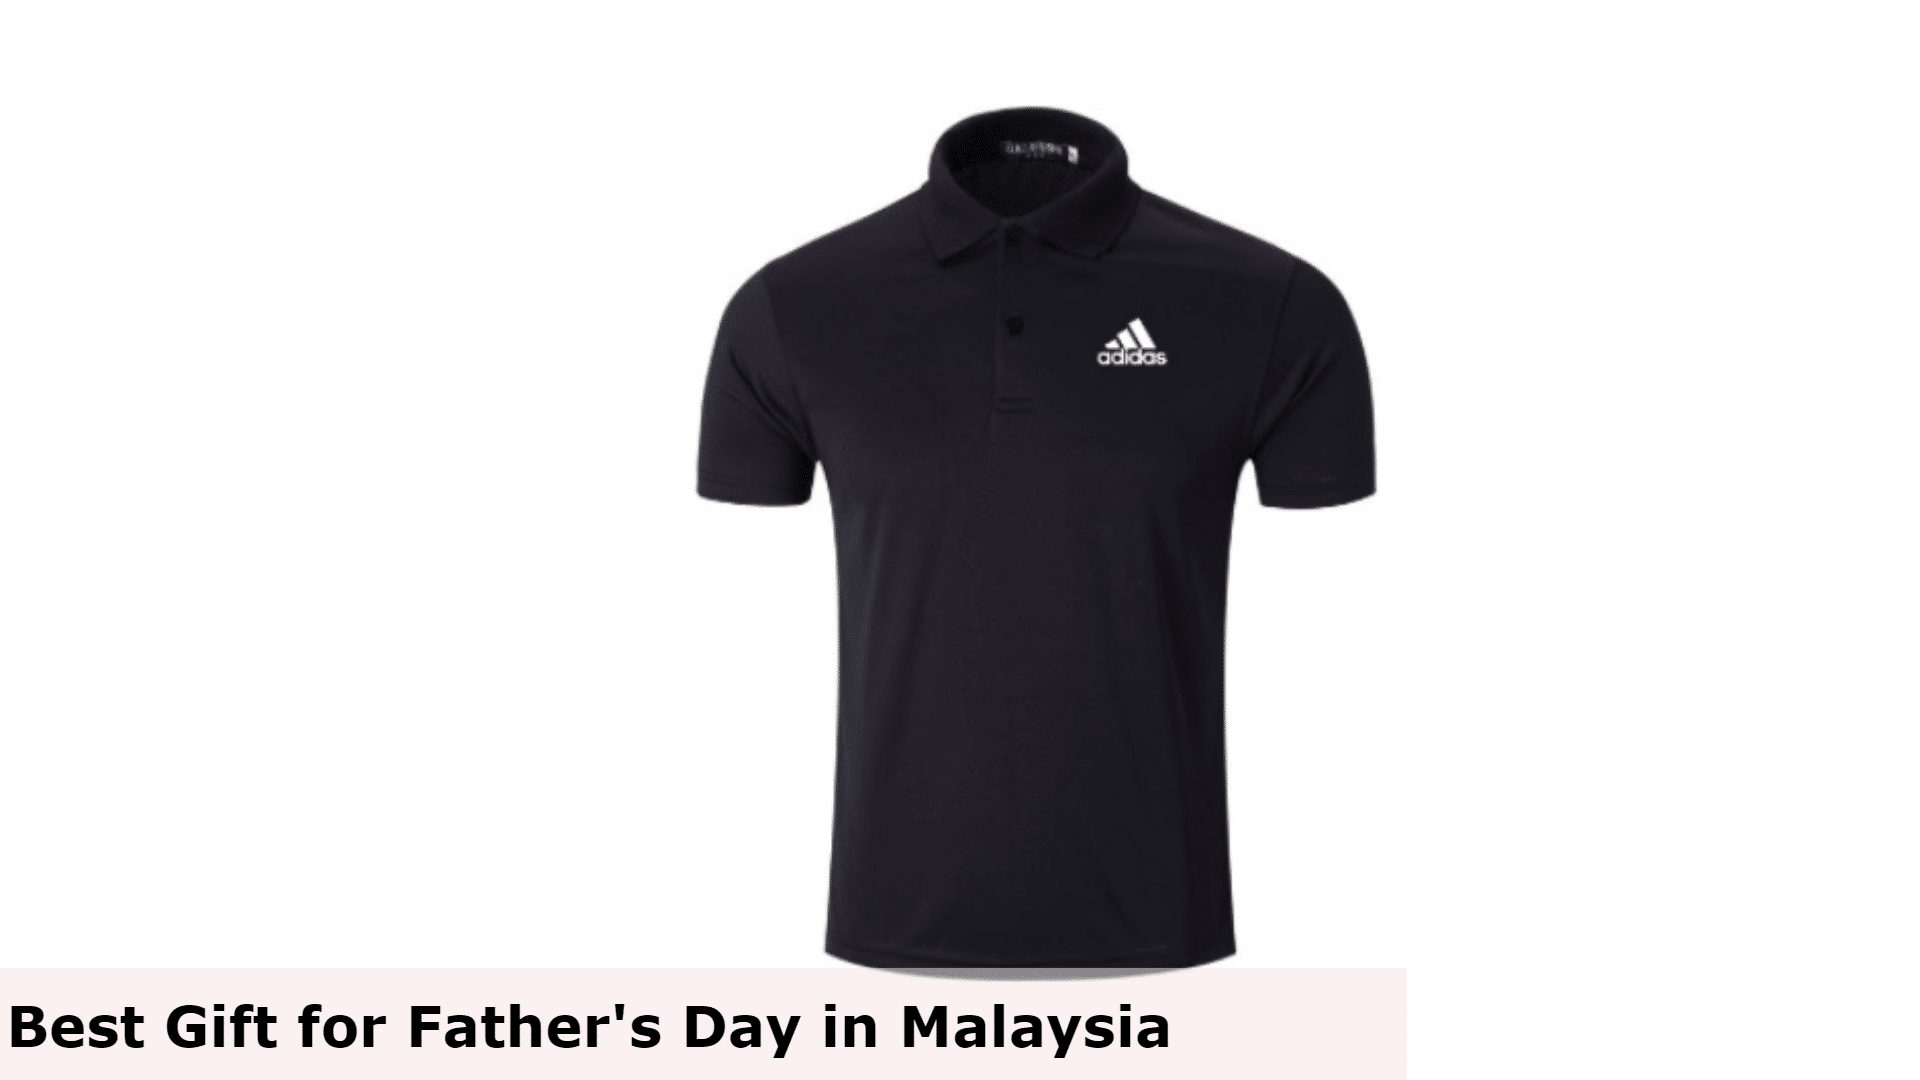 Baju-T Berkolar - Hadiah Terbaik untuk Hari Bapa di Malaysia, Hadiah Terbaik untuk Hari Bapa Malaysia, Hadiah Hari Bapa Terbaik untuk Ayah, Apa yang ayah mahukan untuk Hari Bapa di Malaysia?, Apa yang baik hadiah murah untuk Hari Bapa di Malaysia?, Adakah anda memberi hadiah pada Hari Bapa di Malaysia?, hadiah untuk ayah yang tidak mahu apa-apa, idea hadiah hari ayah yang ringkas, idea hadiah hari bapa 2022, hadiah ayah' idea hadiah hari semasa covid, idea hadiah hari bapa daripada anak perempuan, hadiah unik untuk ayah, idea hadiah hari bapa daripada isteri, hadiah hari bapa daripada anak lelaki, Apa yang dibeli untuk ayah yang tidak mahu apa-apa?, Apa yang perlu dapatkan ayah yang sukar dibeli?, Apa yang perlu saya dapatkan ayah saya yang membosankan untuk Krismas?, Hadiah apa yang ayah suka?,